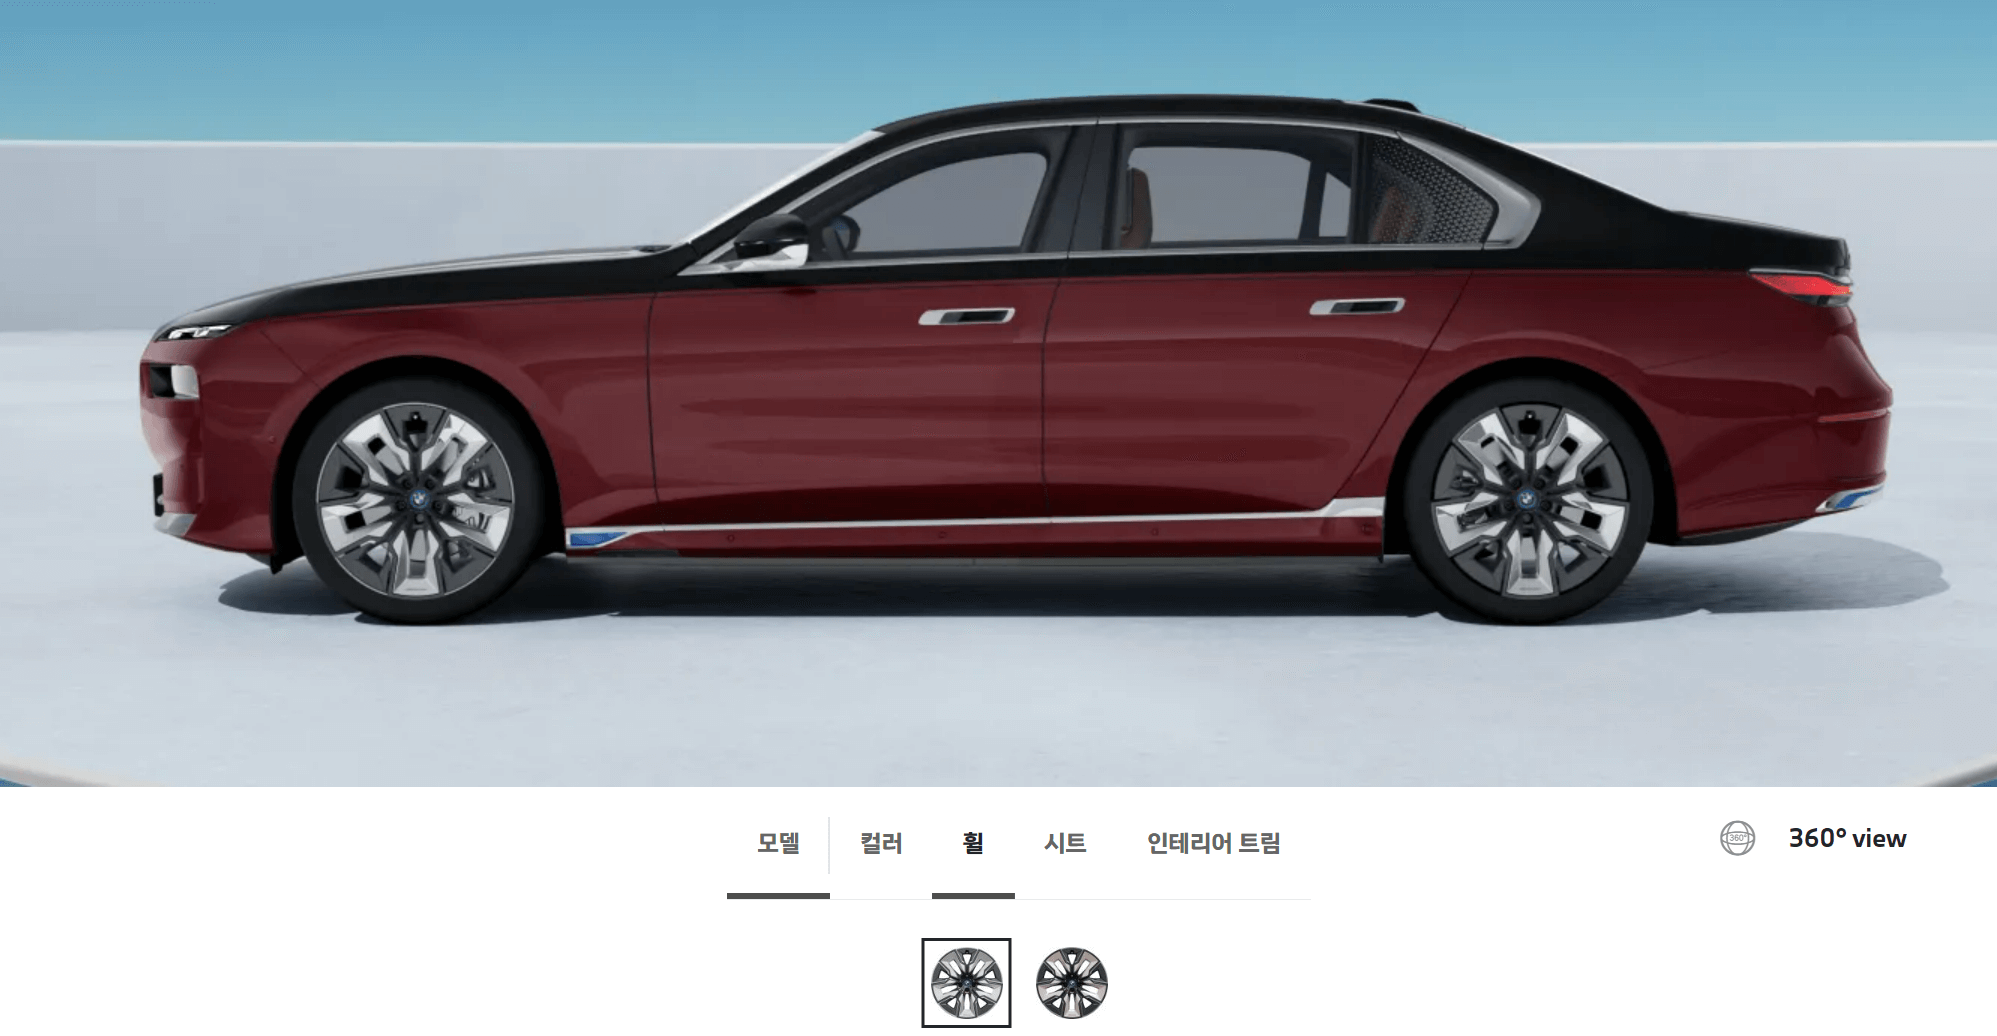 BMW 7시리즈 풀체인지 가격 프로모션 할인율